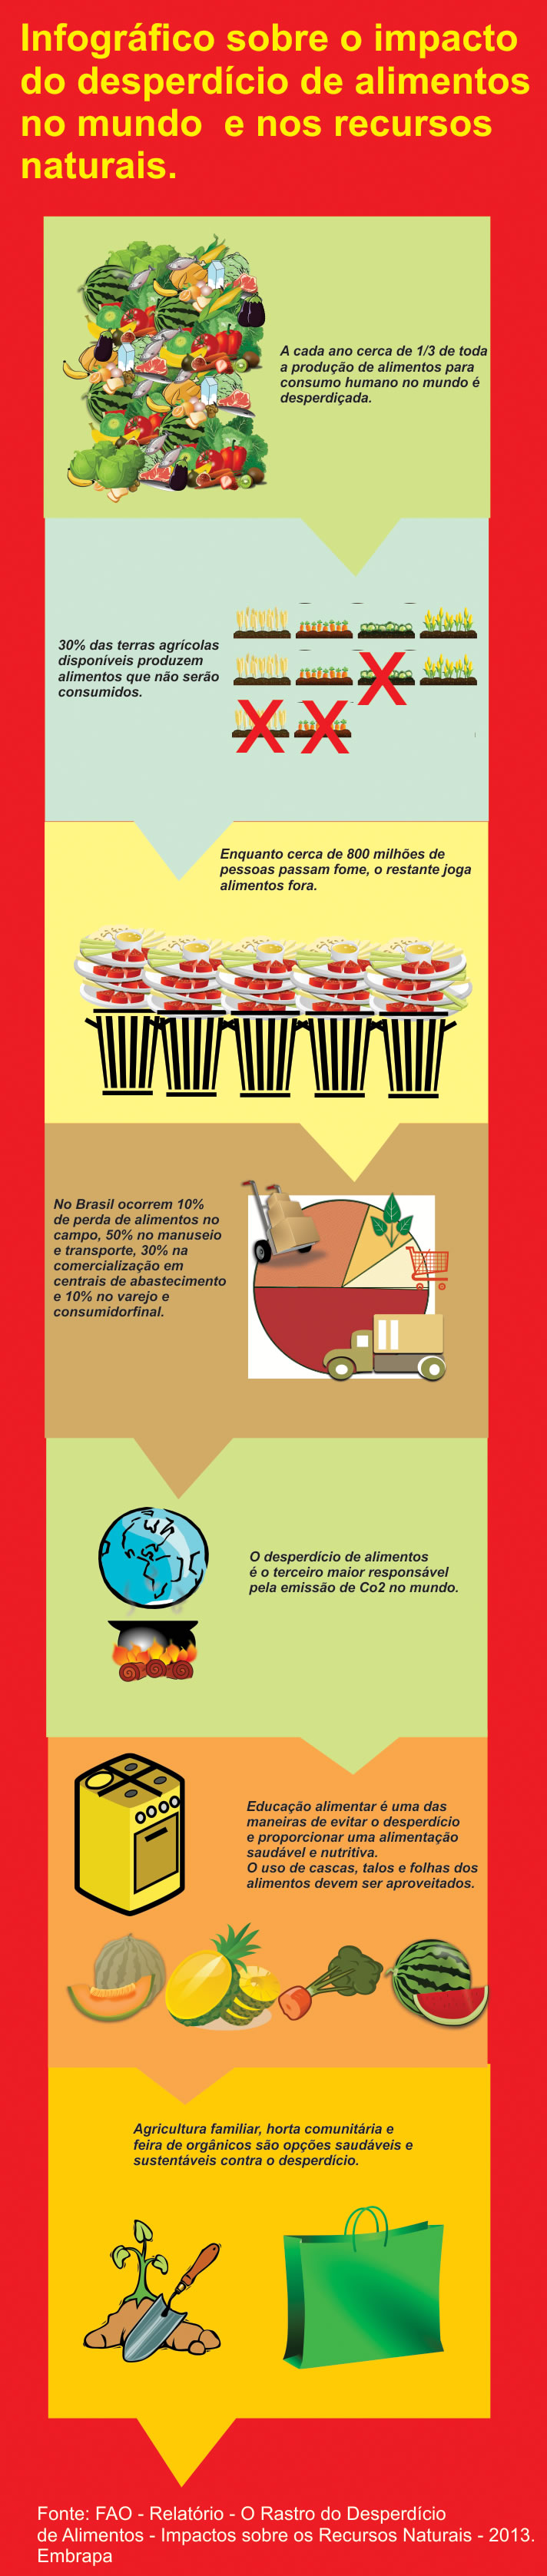 Infográfico sobre Desperdício de Alimentos no Mundo e o Impacto sobre os Recursos Naturais.